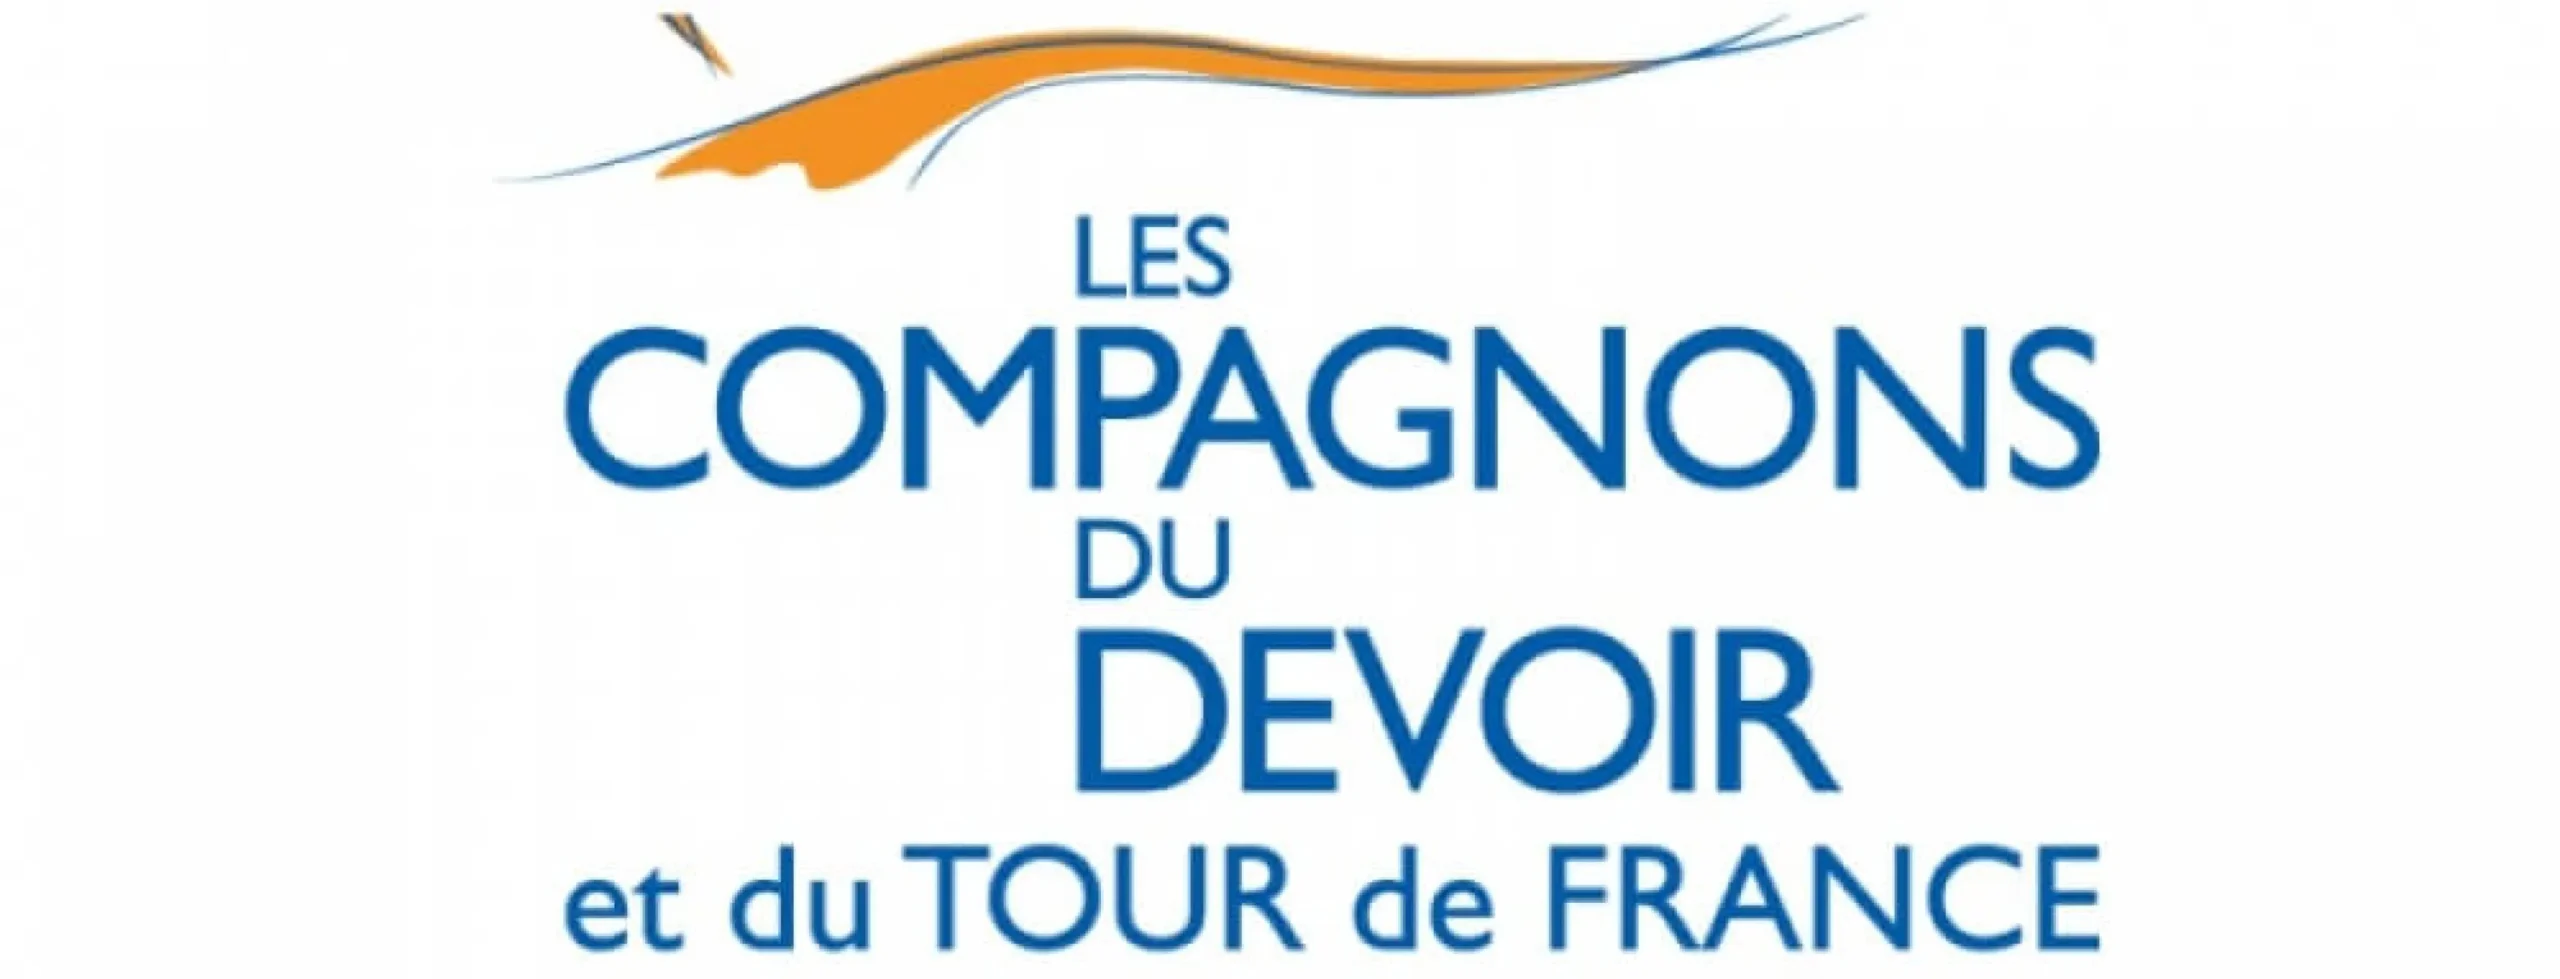 logo Compagnons du Devoir partenaire Gesec formation continue apprentissage